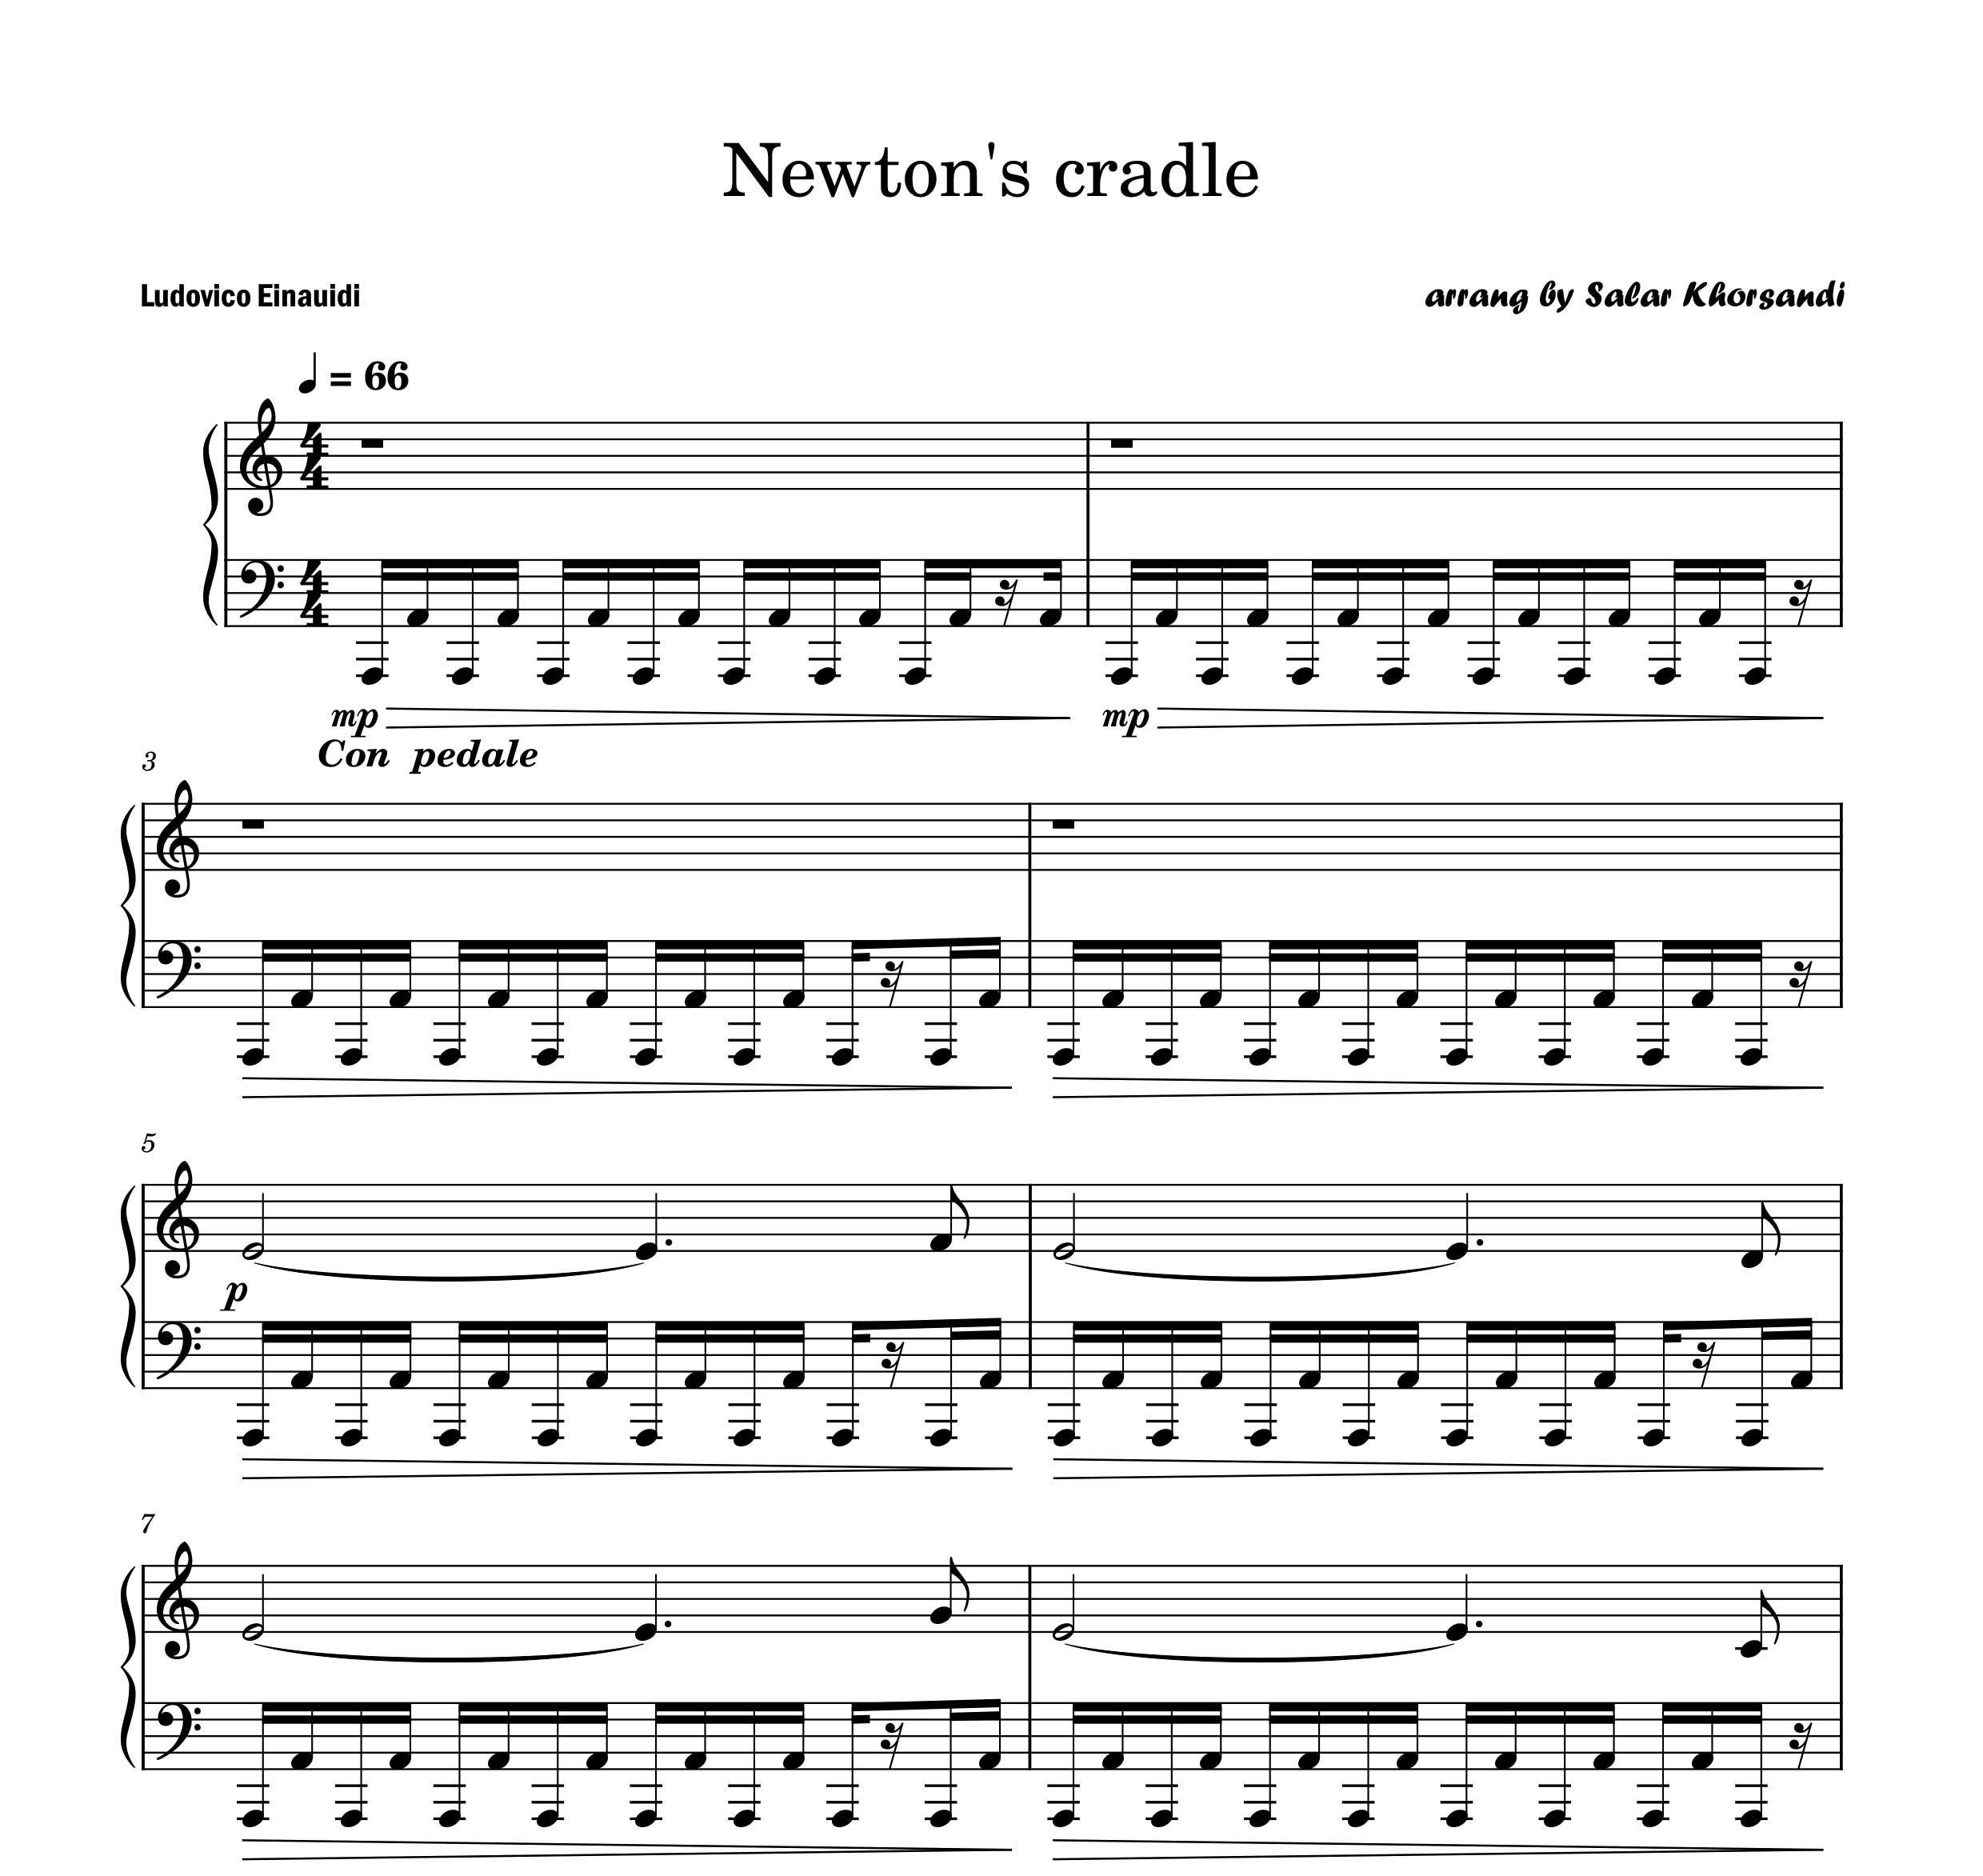 نت پیانو گهواره ی نیوتون Newton's Cradle از Ludovico Einaudi